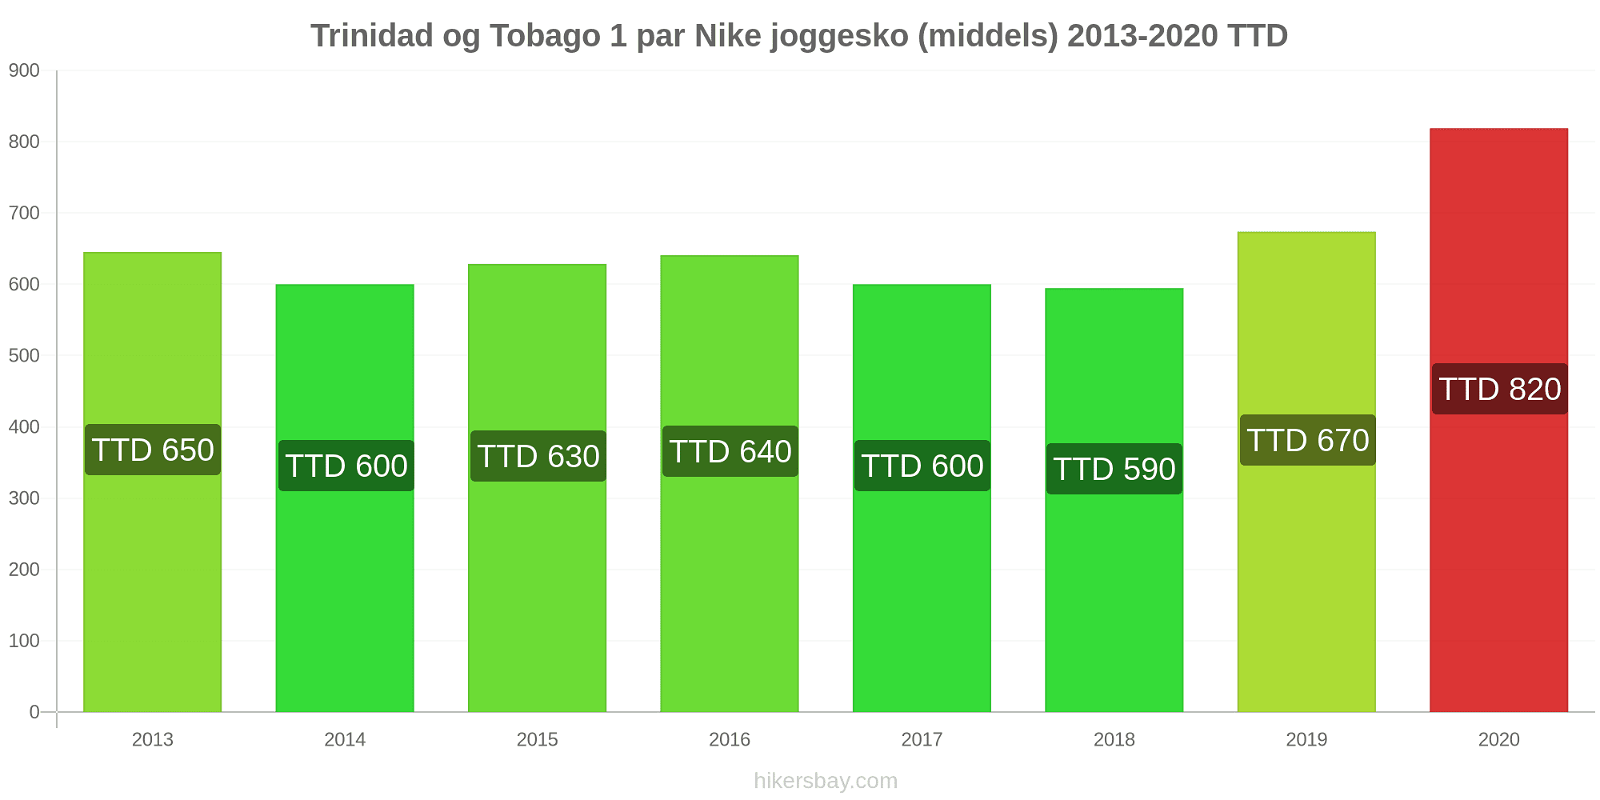 Trinidad og Tobago prisendringer 1 par Nike joggesko (middels) hikersbay.com